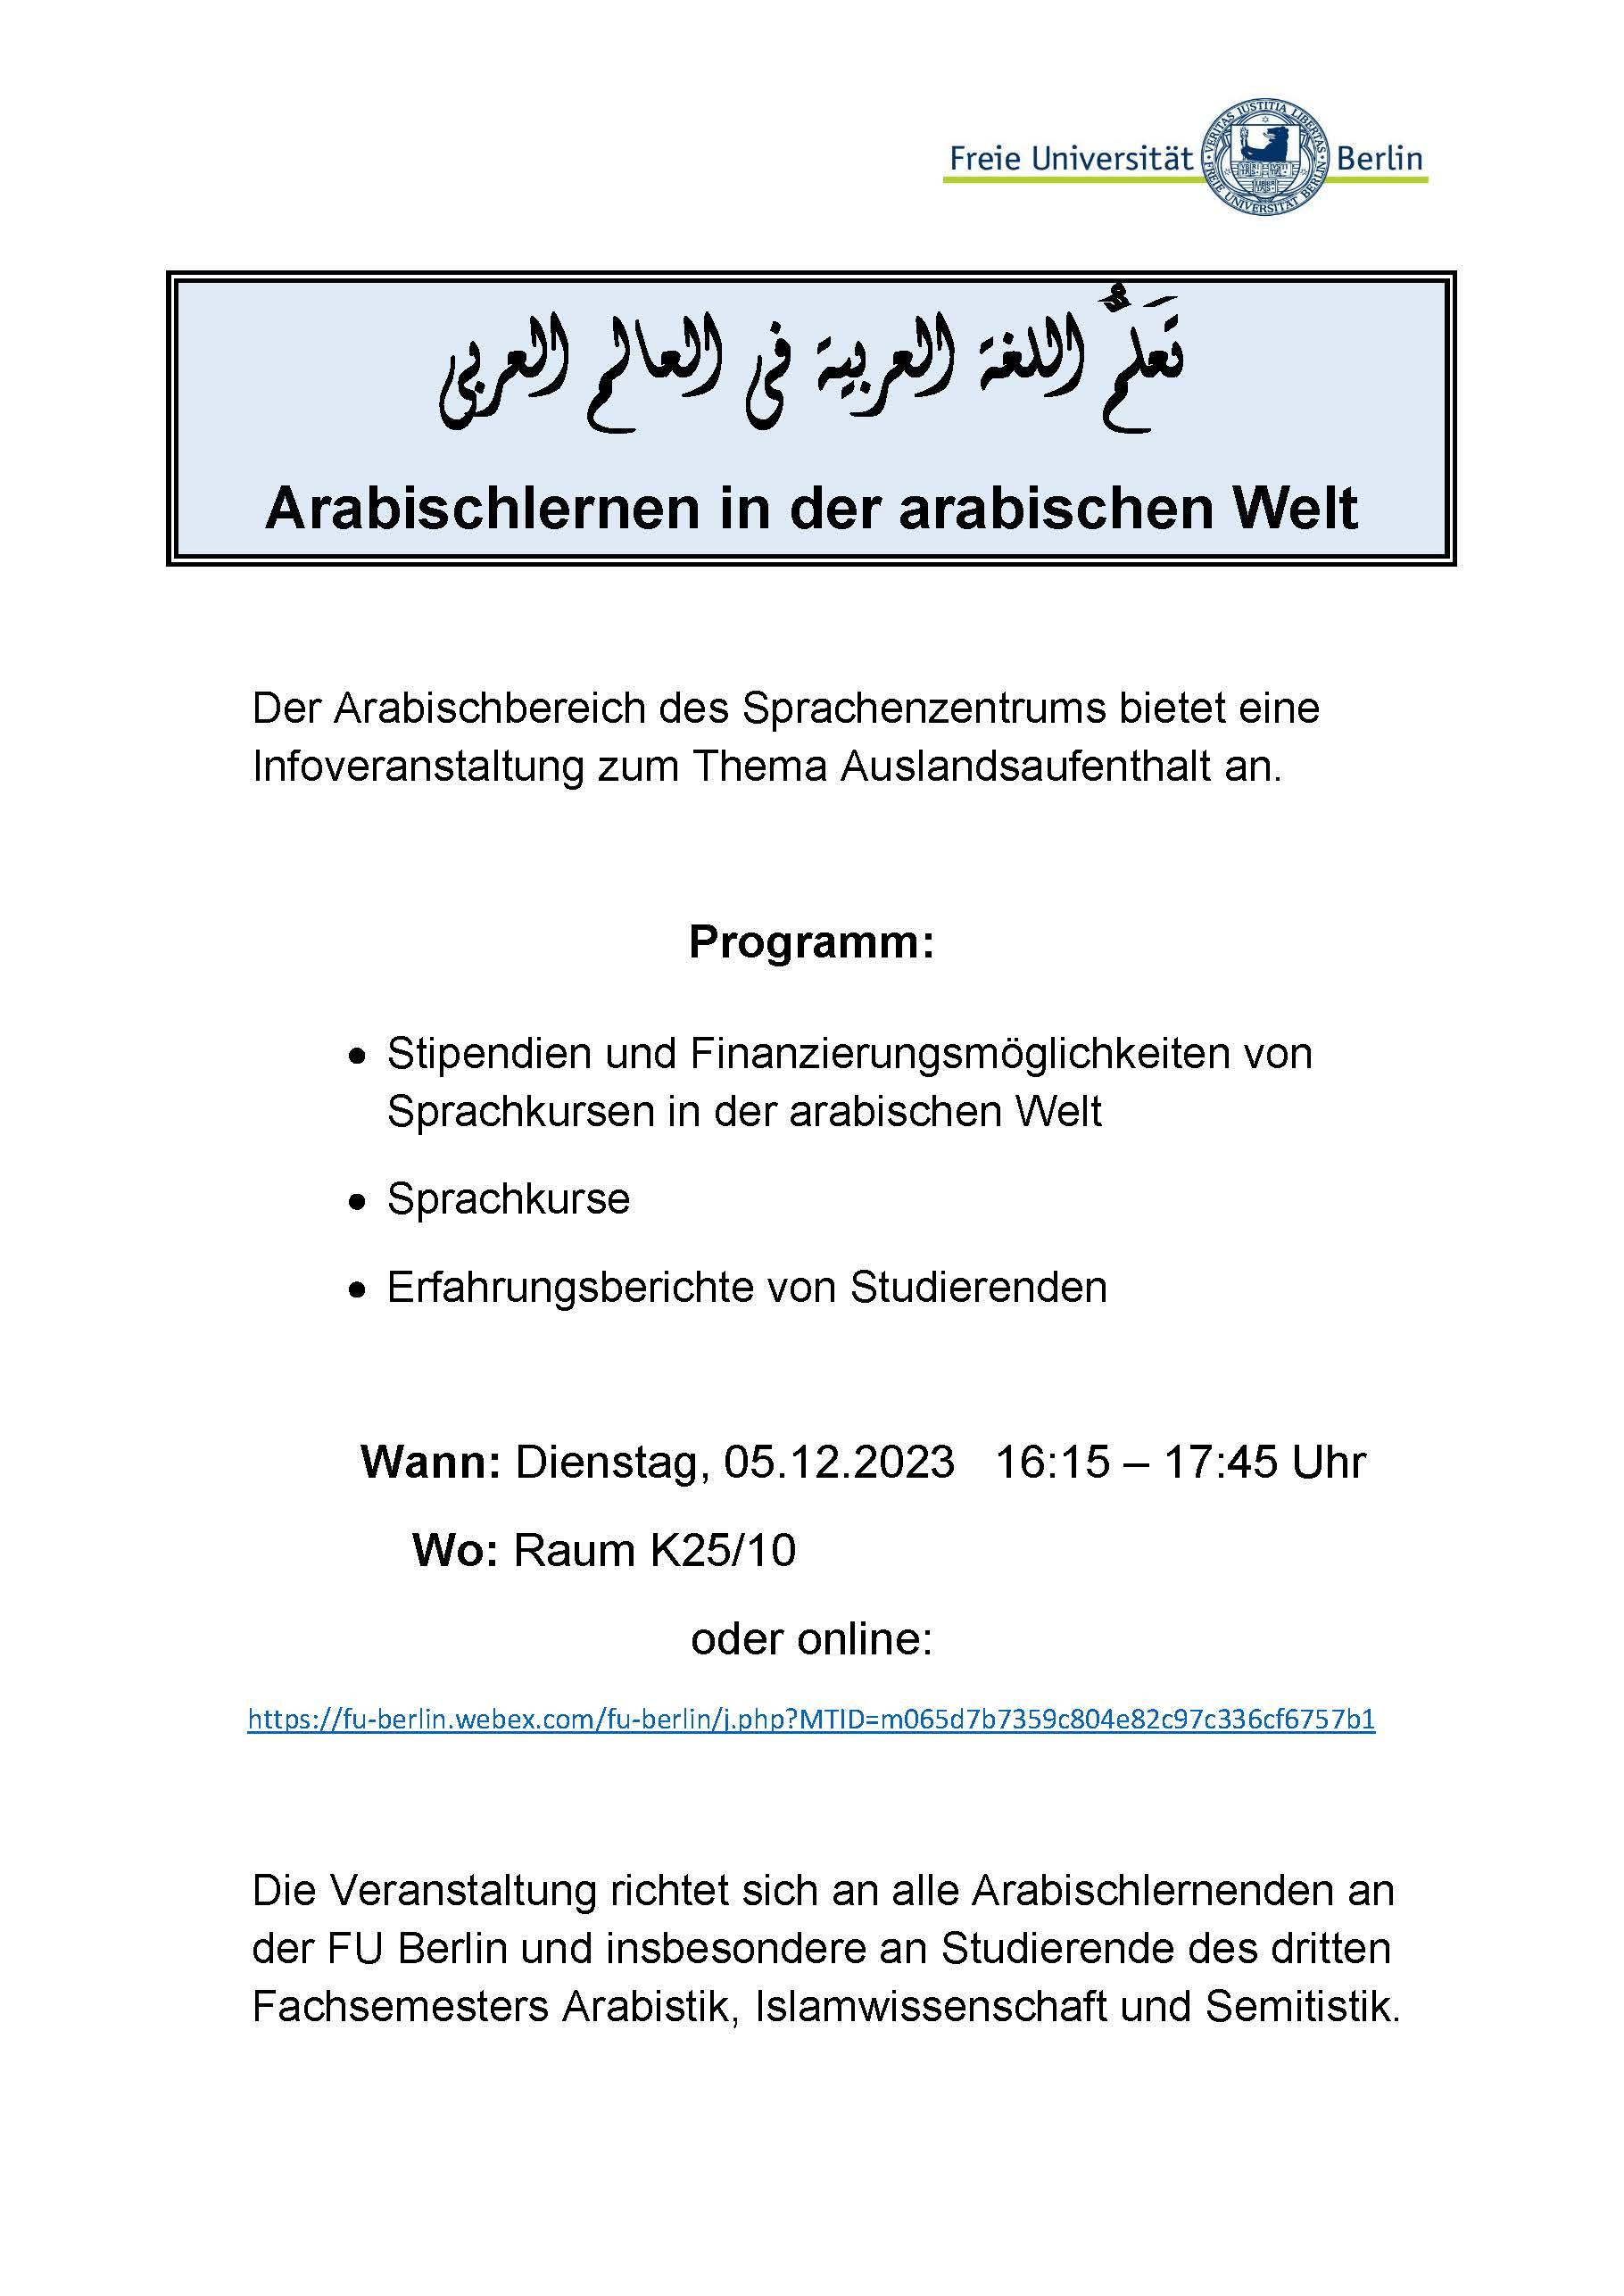 Flyer Infoveranstaltung Arabisch 05.12.2023